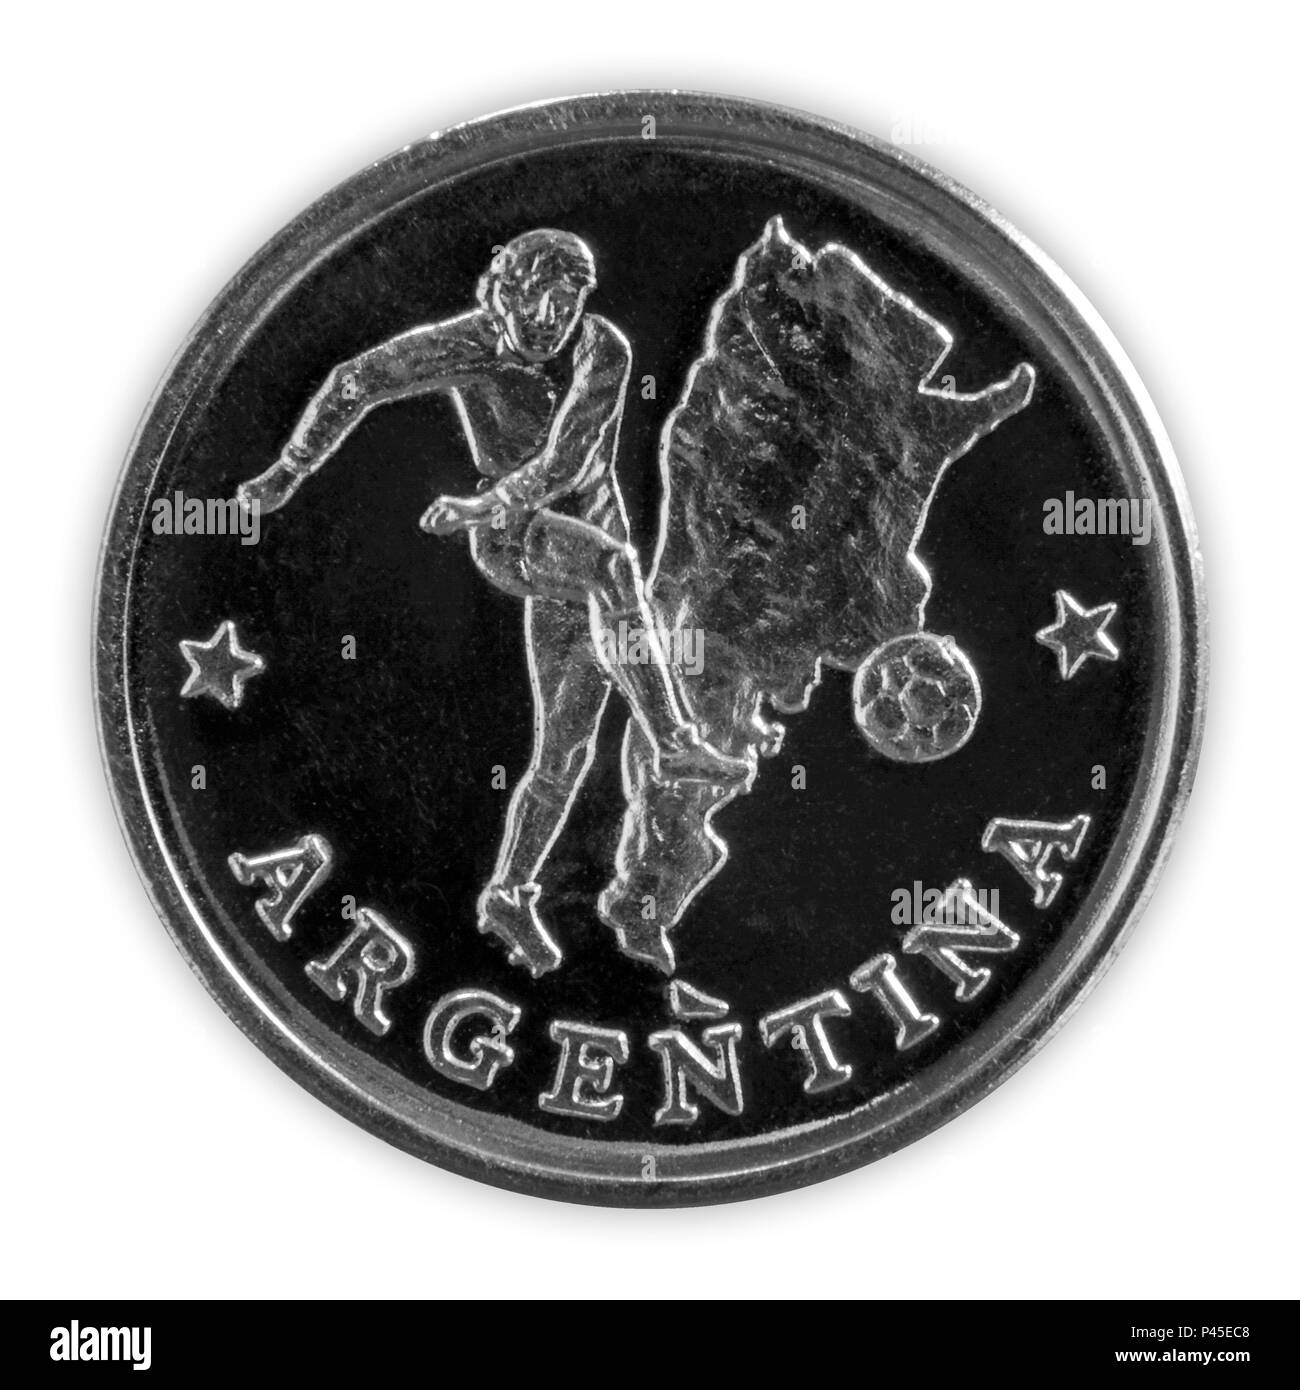 Argentine - le 18 juin 2018 : Coupe du Monde de la FIFA - monnaie commémorative doté d''un joueur de football dans l'équipe d'Argentine, intitulé l'Argentine, avec une carte d'Ar Banque D'Images